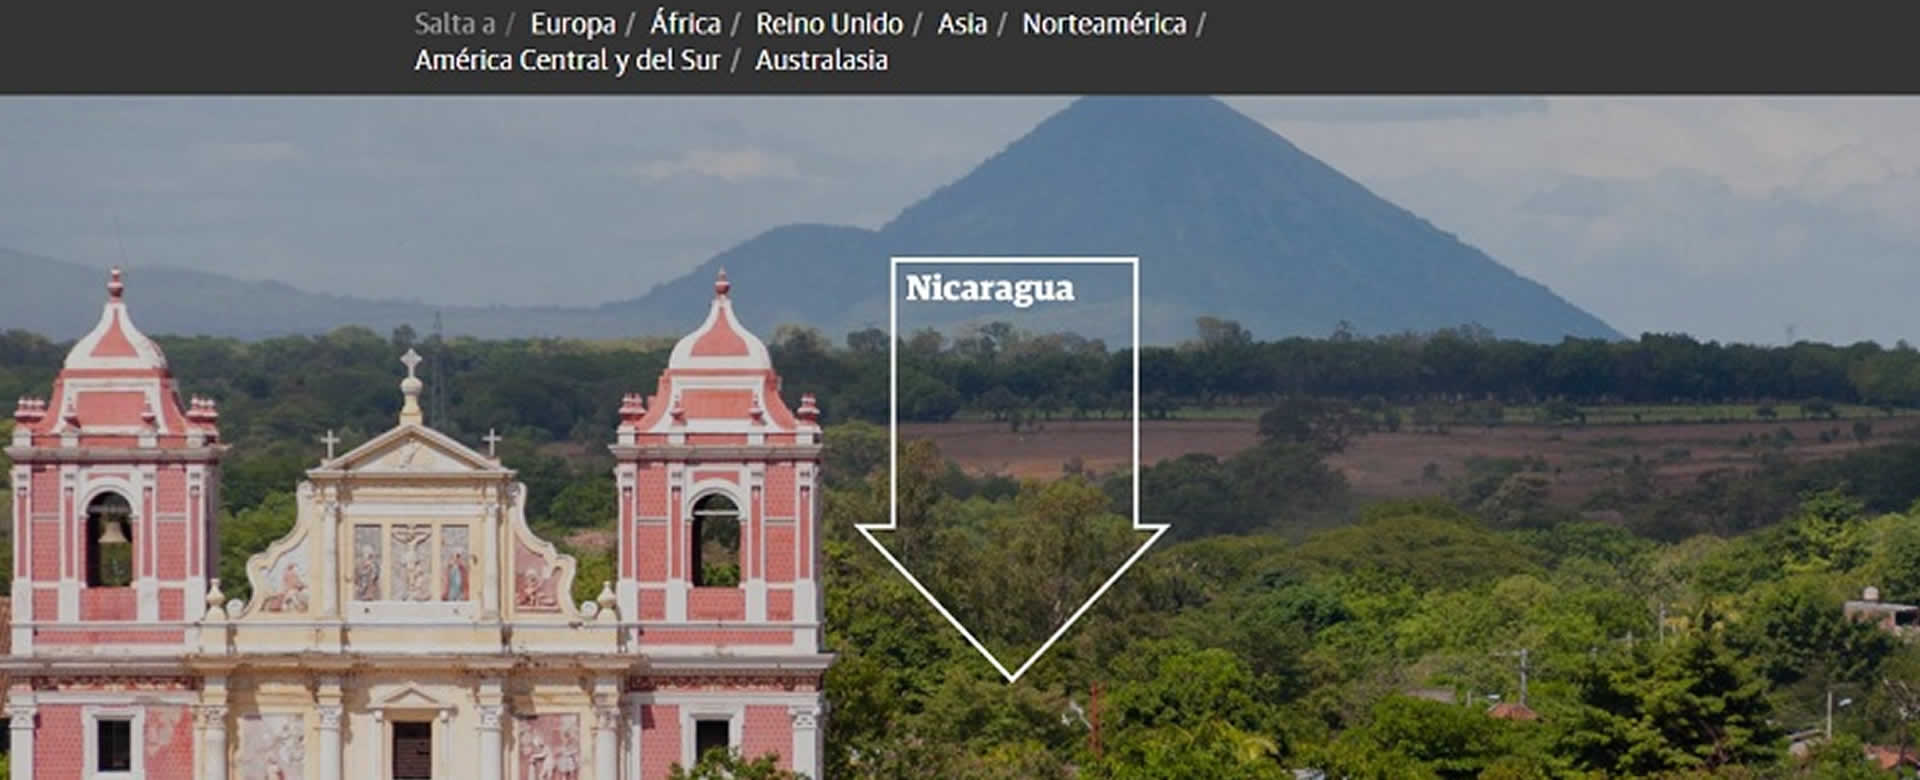 The Guardian incluye a Nicaragua entre sus recomendaciones de destinos turísticos